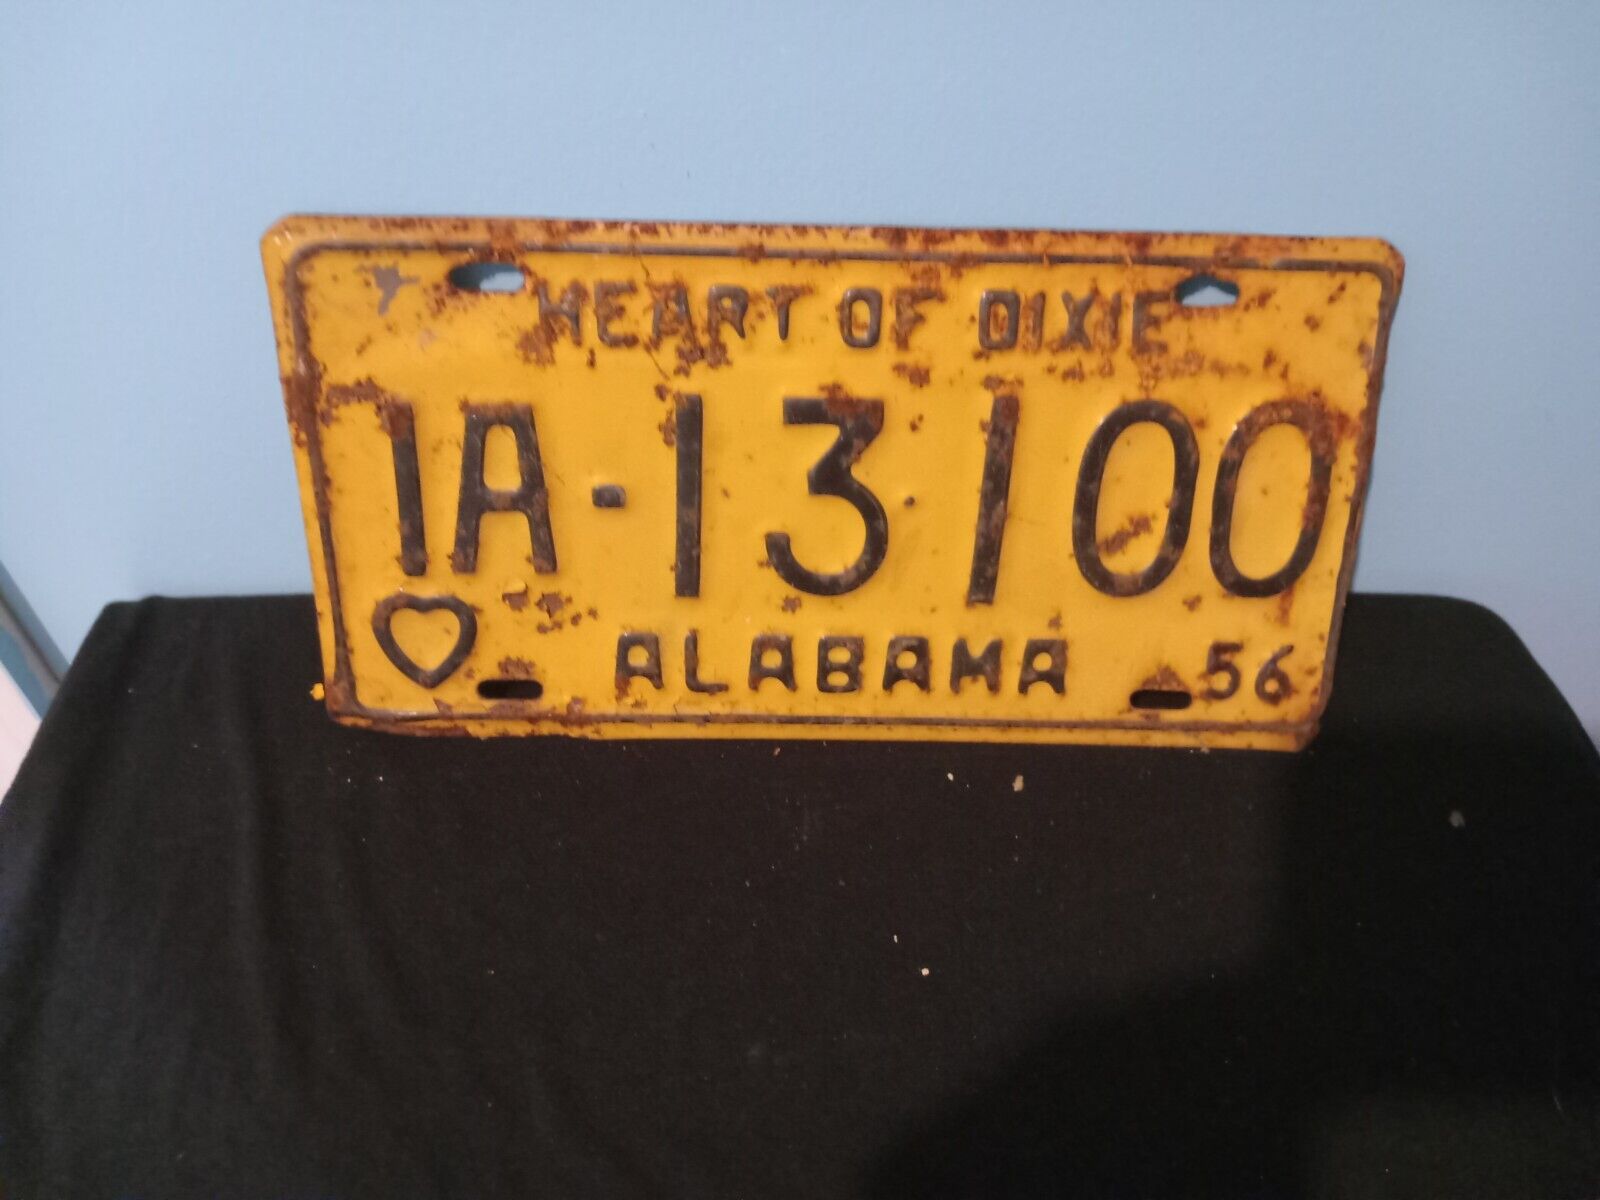 VIntage Alabama license plate 1956